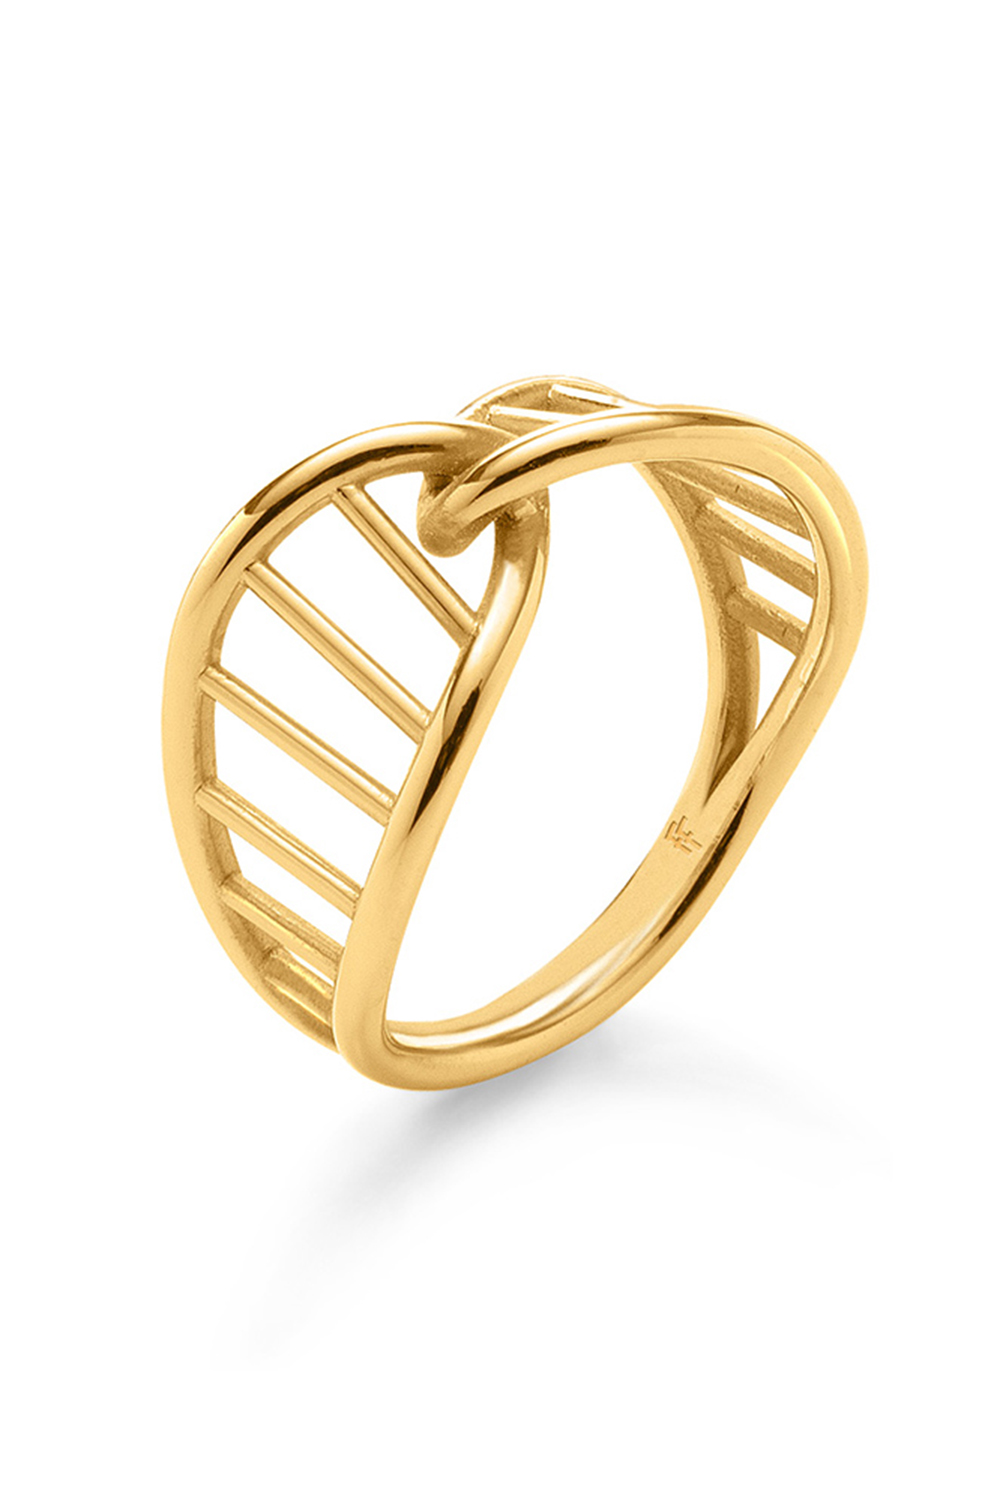 Γυναικεία/Αξεσουάρ/Κοσμήματα/Δαχτυλίδια FOLLI FOLLIE - Γυναικείo ασημένιο δαχτυλίδι FOLLI FOLLIE STYLE DNA χρυσό